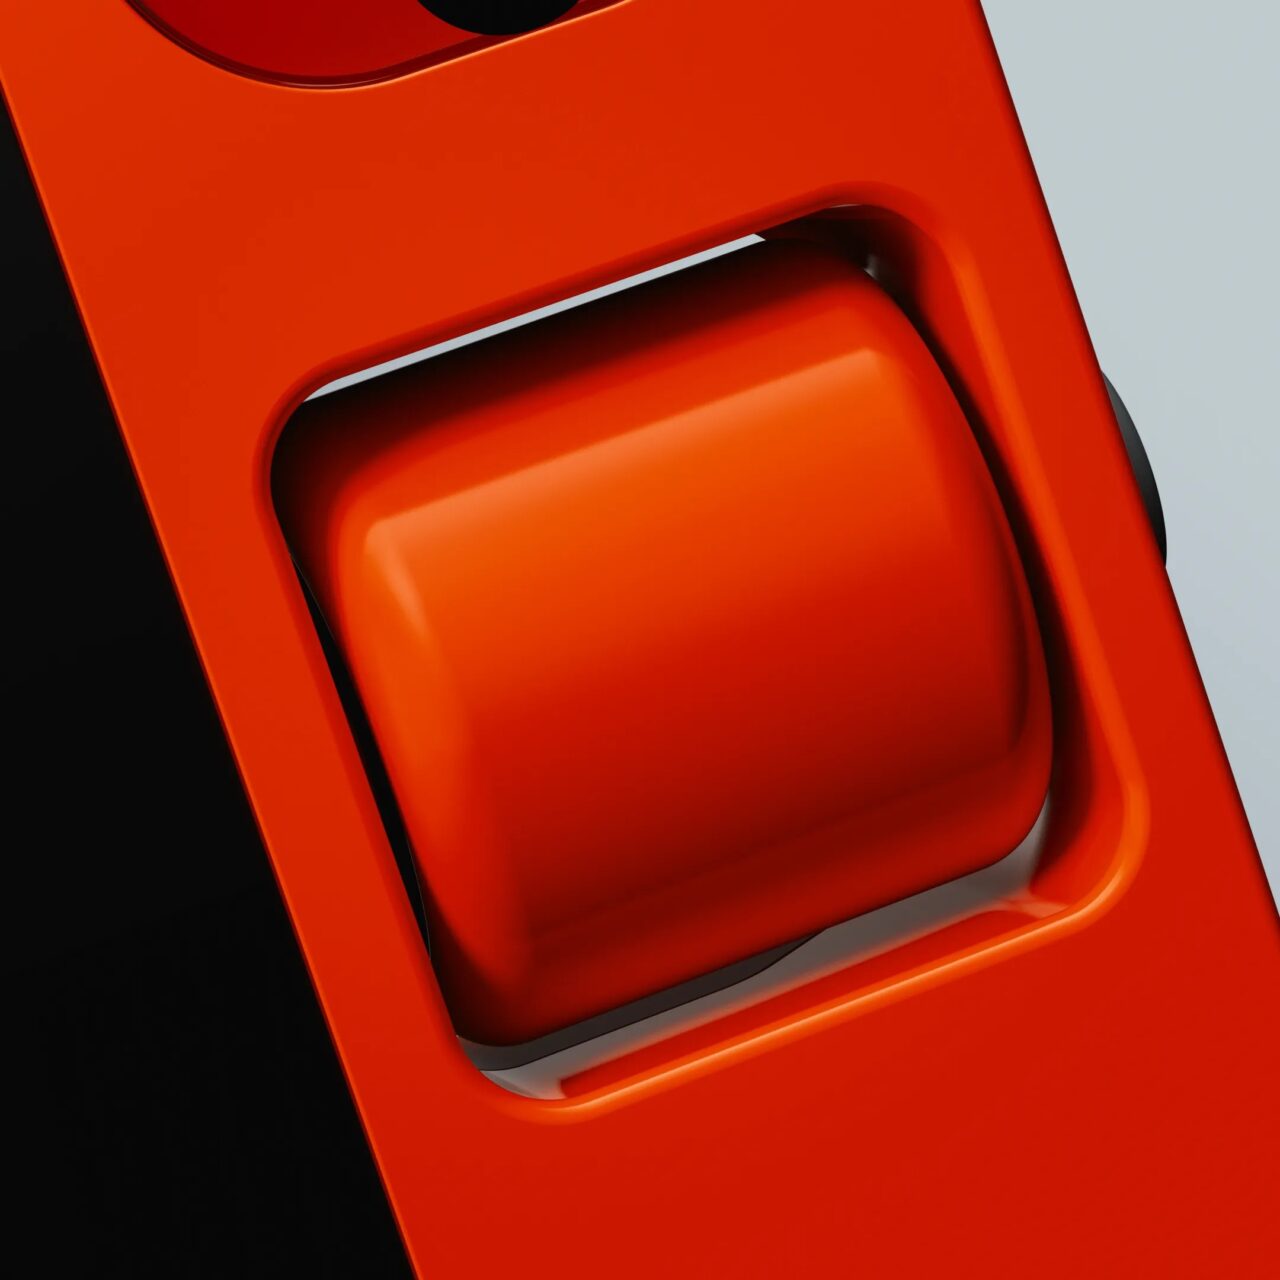 Pomarańczowy abstrakcyjny obiekt 3D z błyszczącymi krawędziami na dwukolorowym tle.